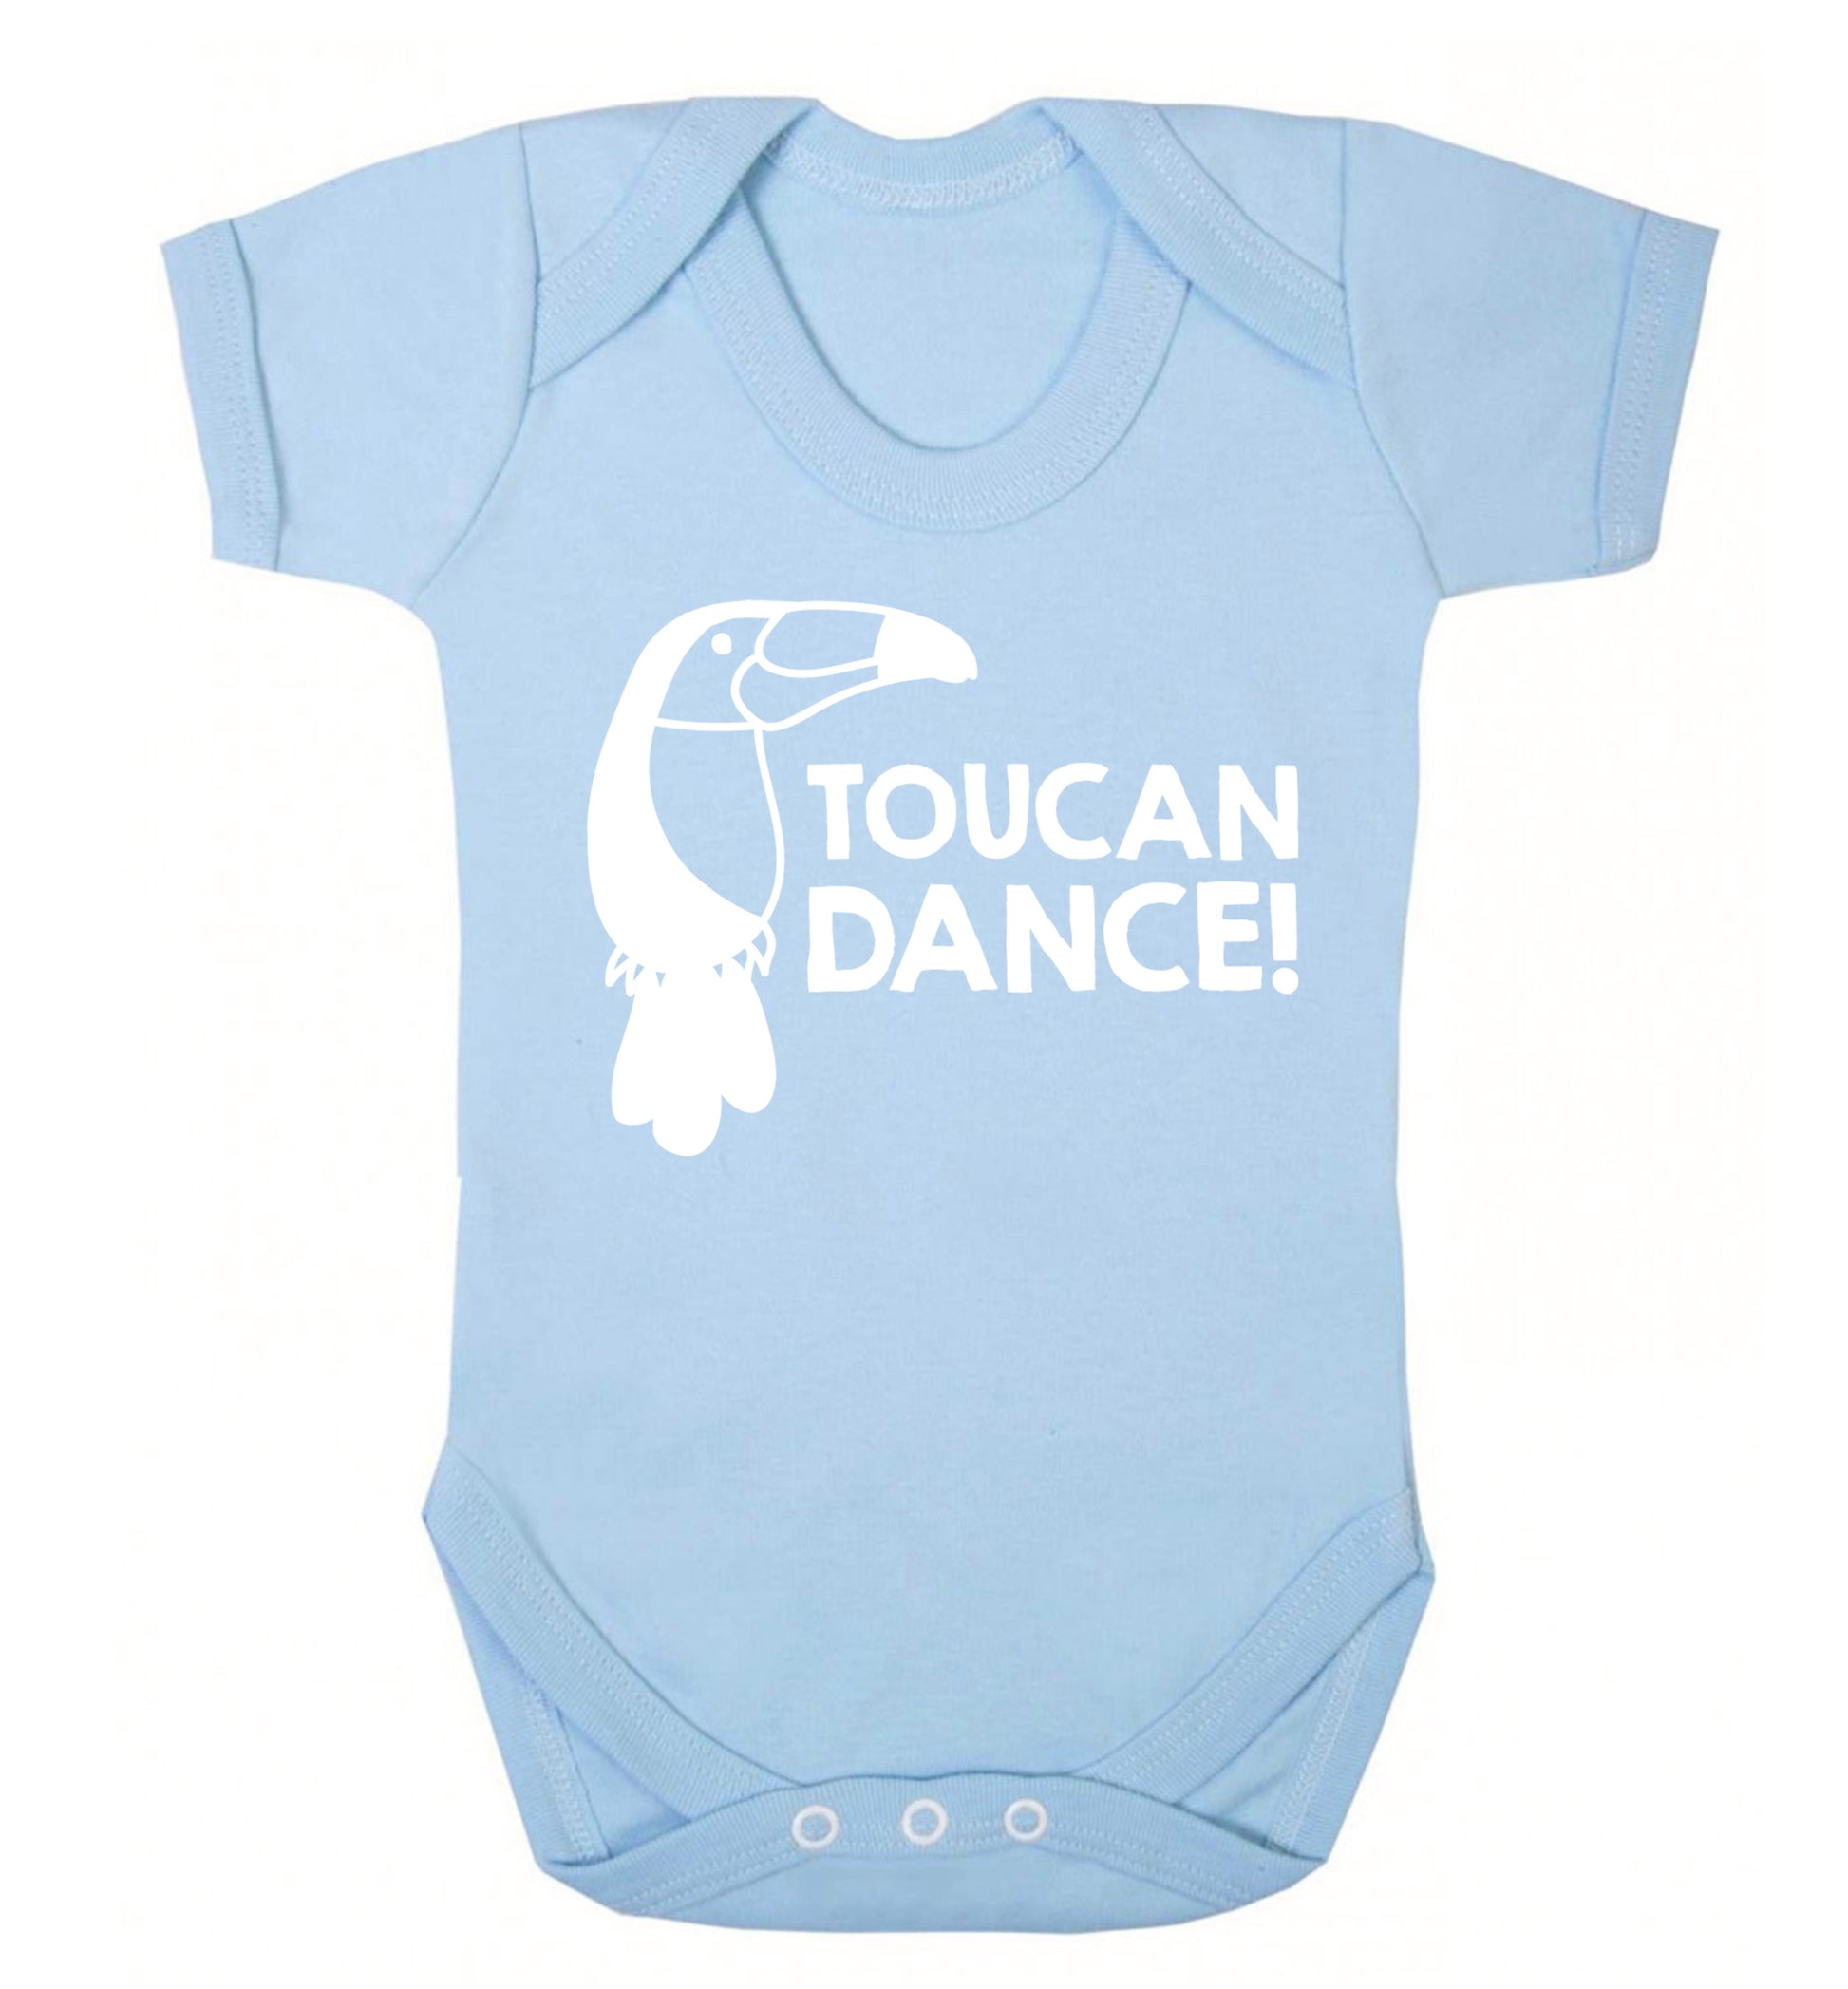 Toucan dance Baby Vest pale blue 18-24 months